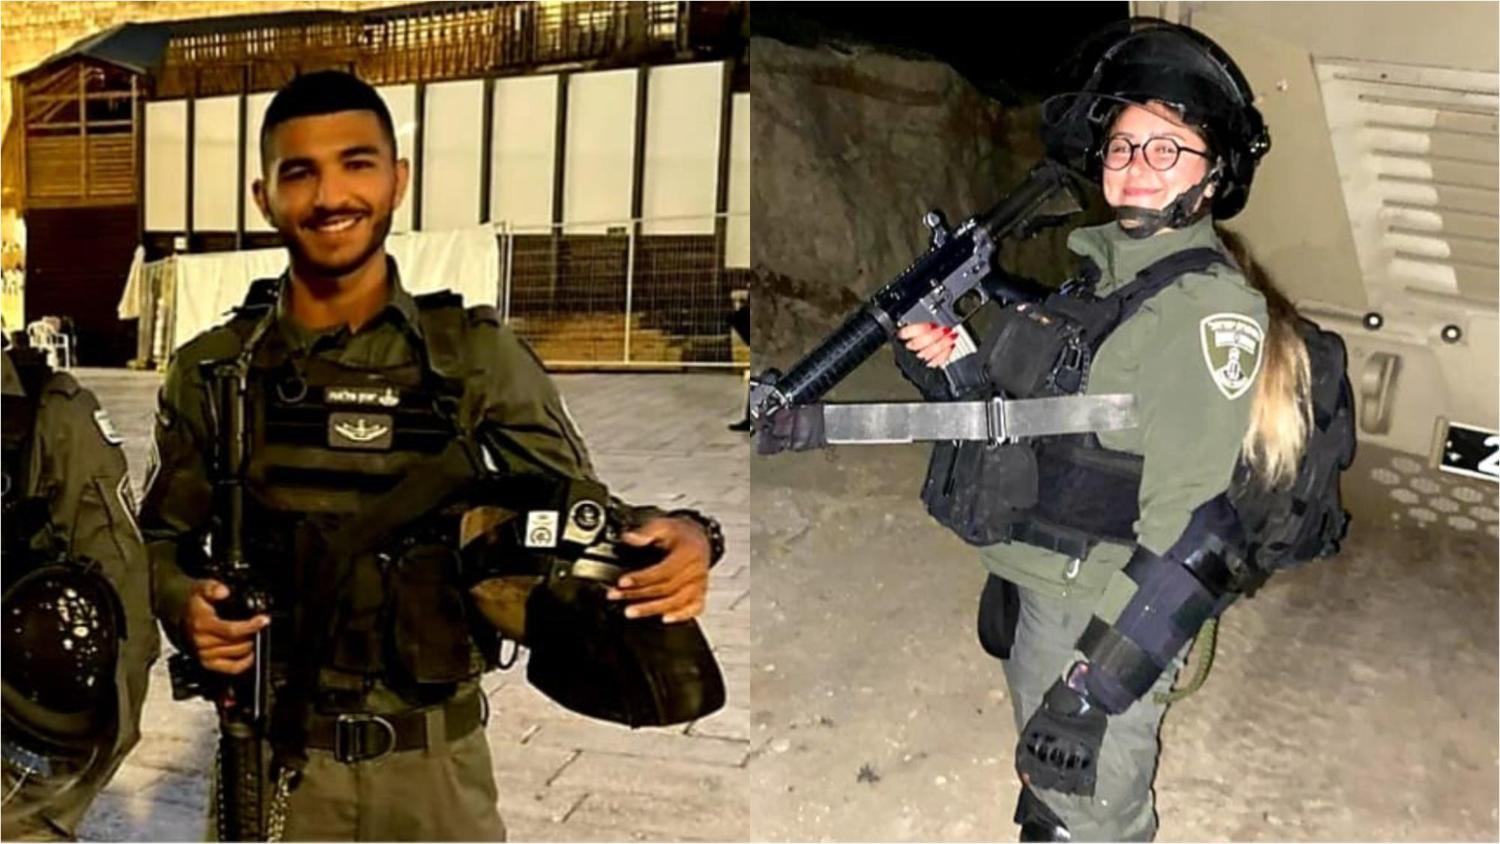 Yazan Fallah y Shirel Aboukaret son los guardias fronterizos de 19 años que fallecieron en el ataque terrorista de Hadera. Yehí Zijrám Baruj. Hashem Yikom Damám.